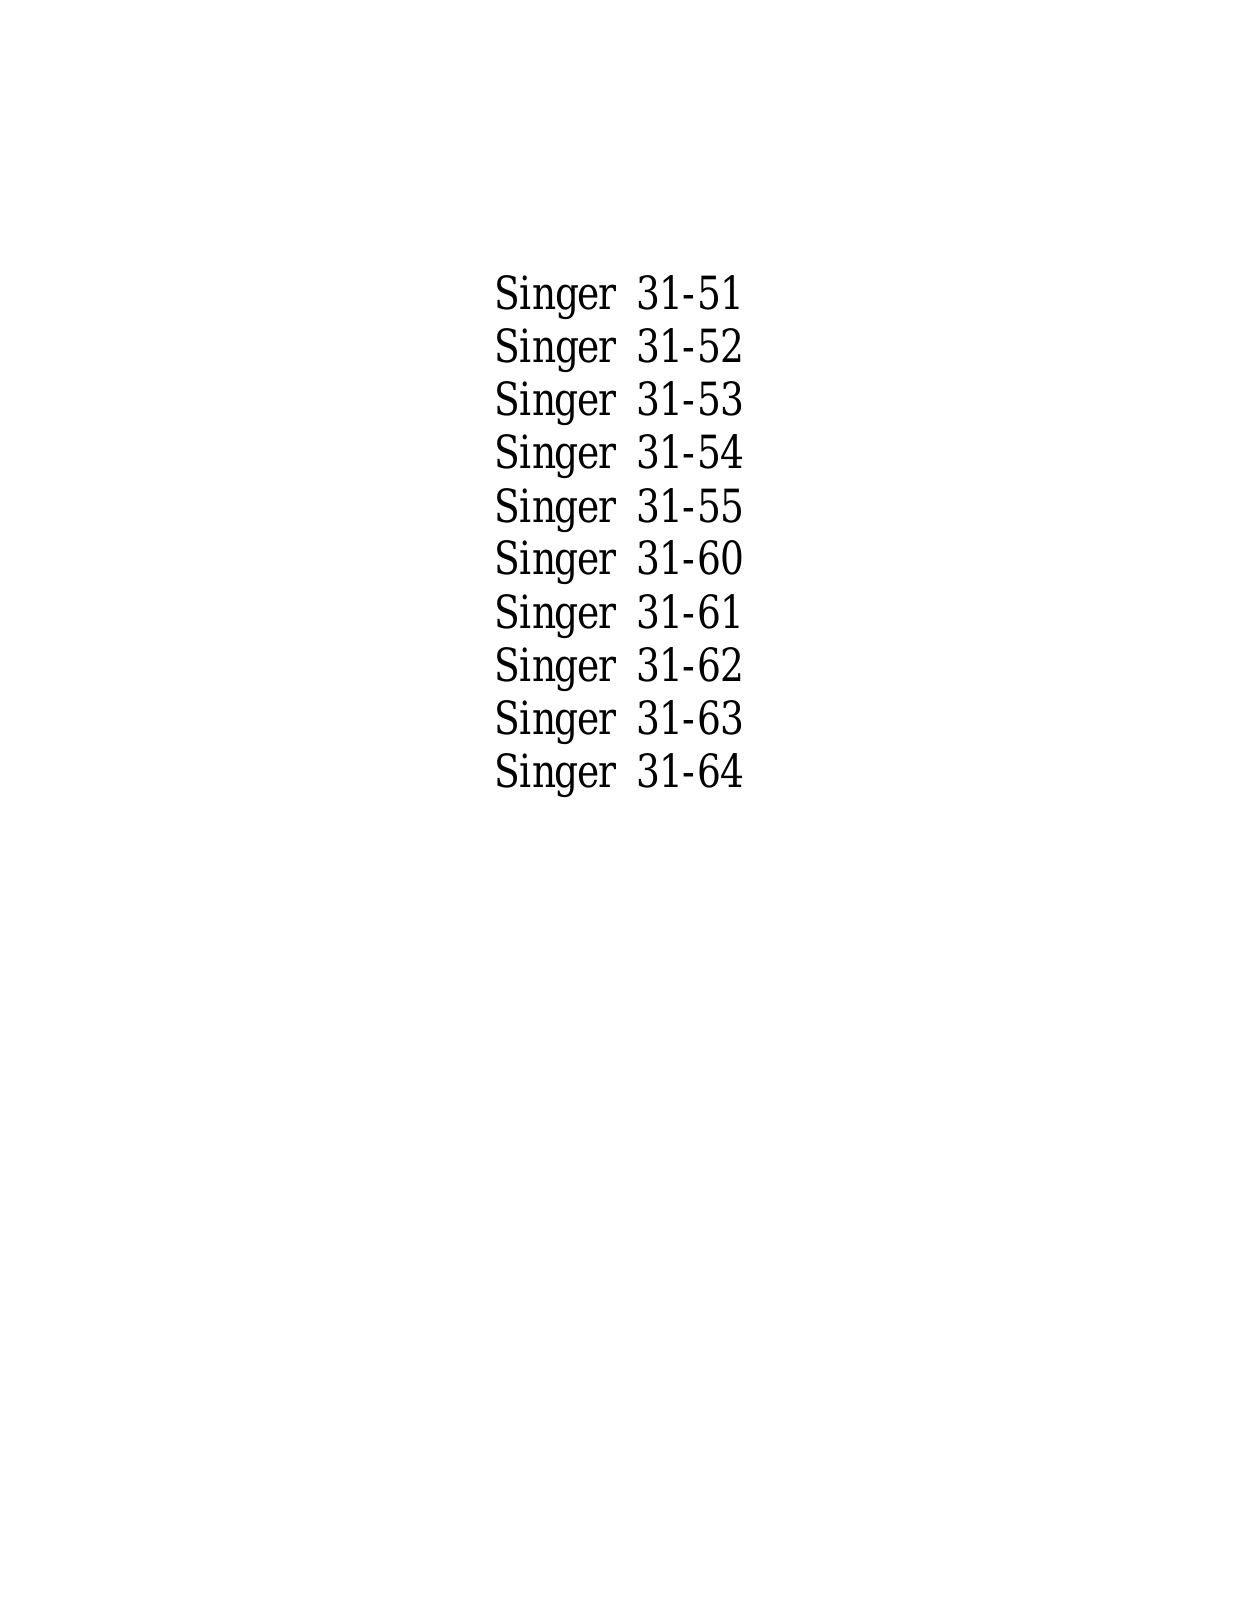 SINGER 31-51, 31-52, 31-53, 31-54, 31-55 Parts List